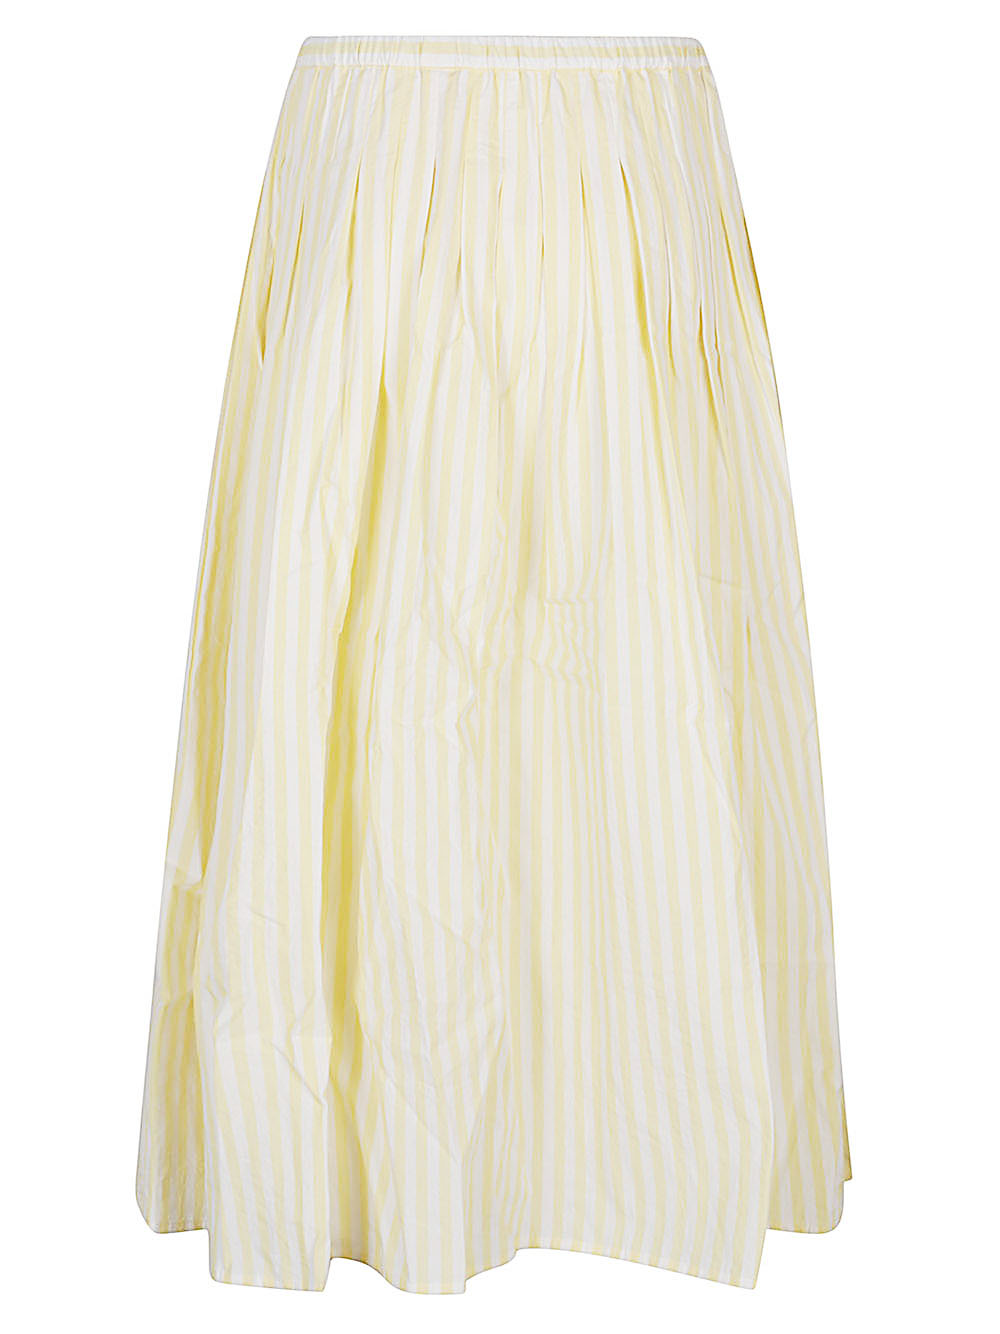 Apuntob APUNTOB- Striped Cotton Midi Skirt